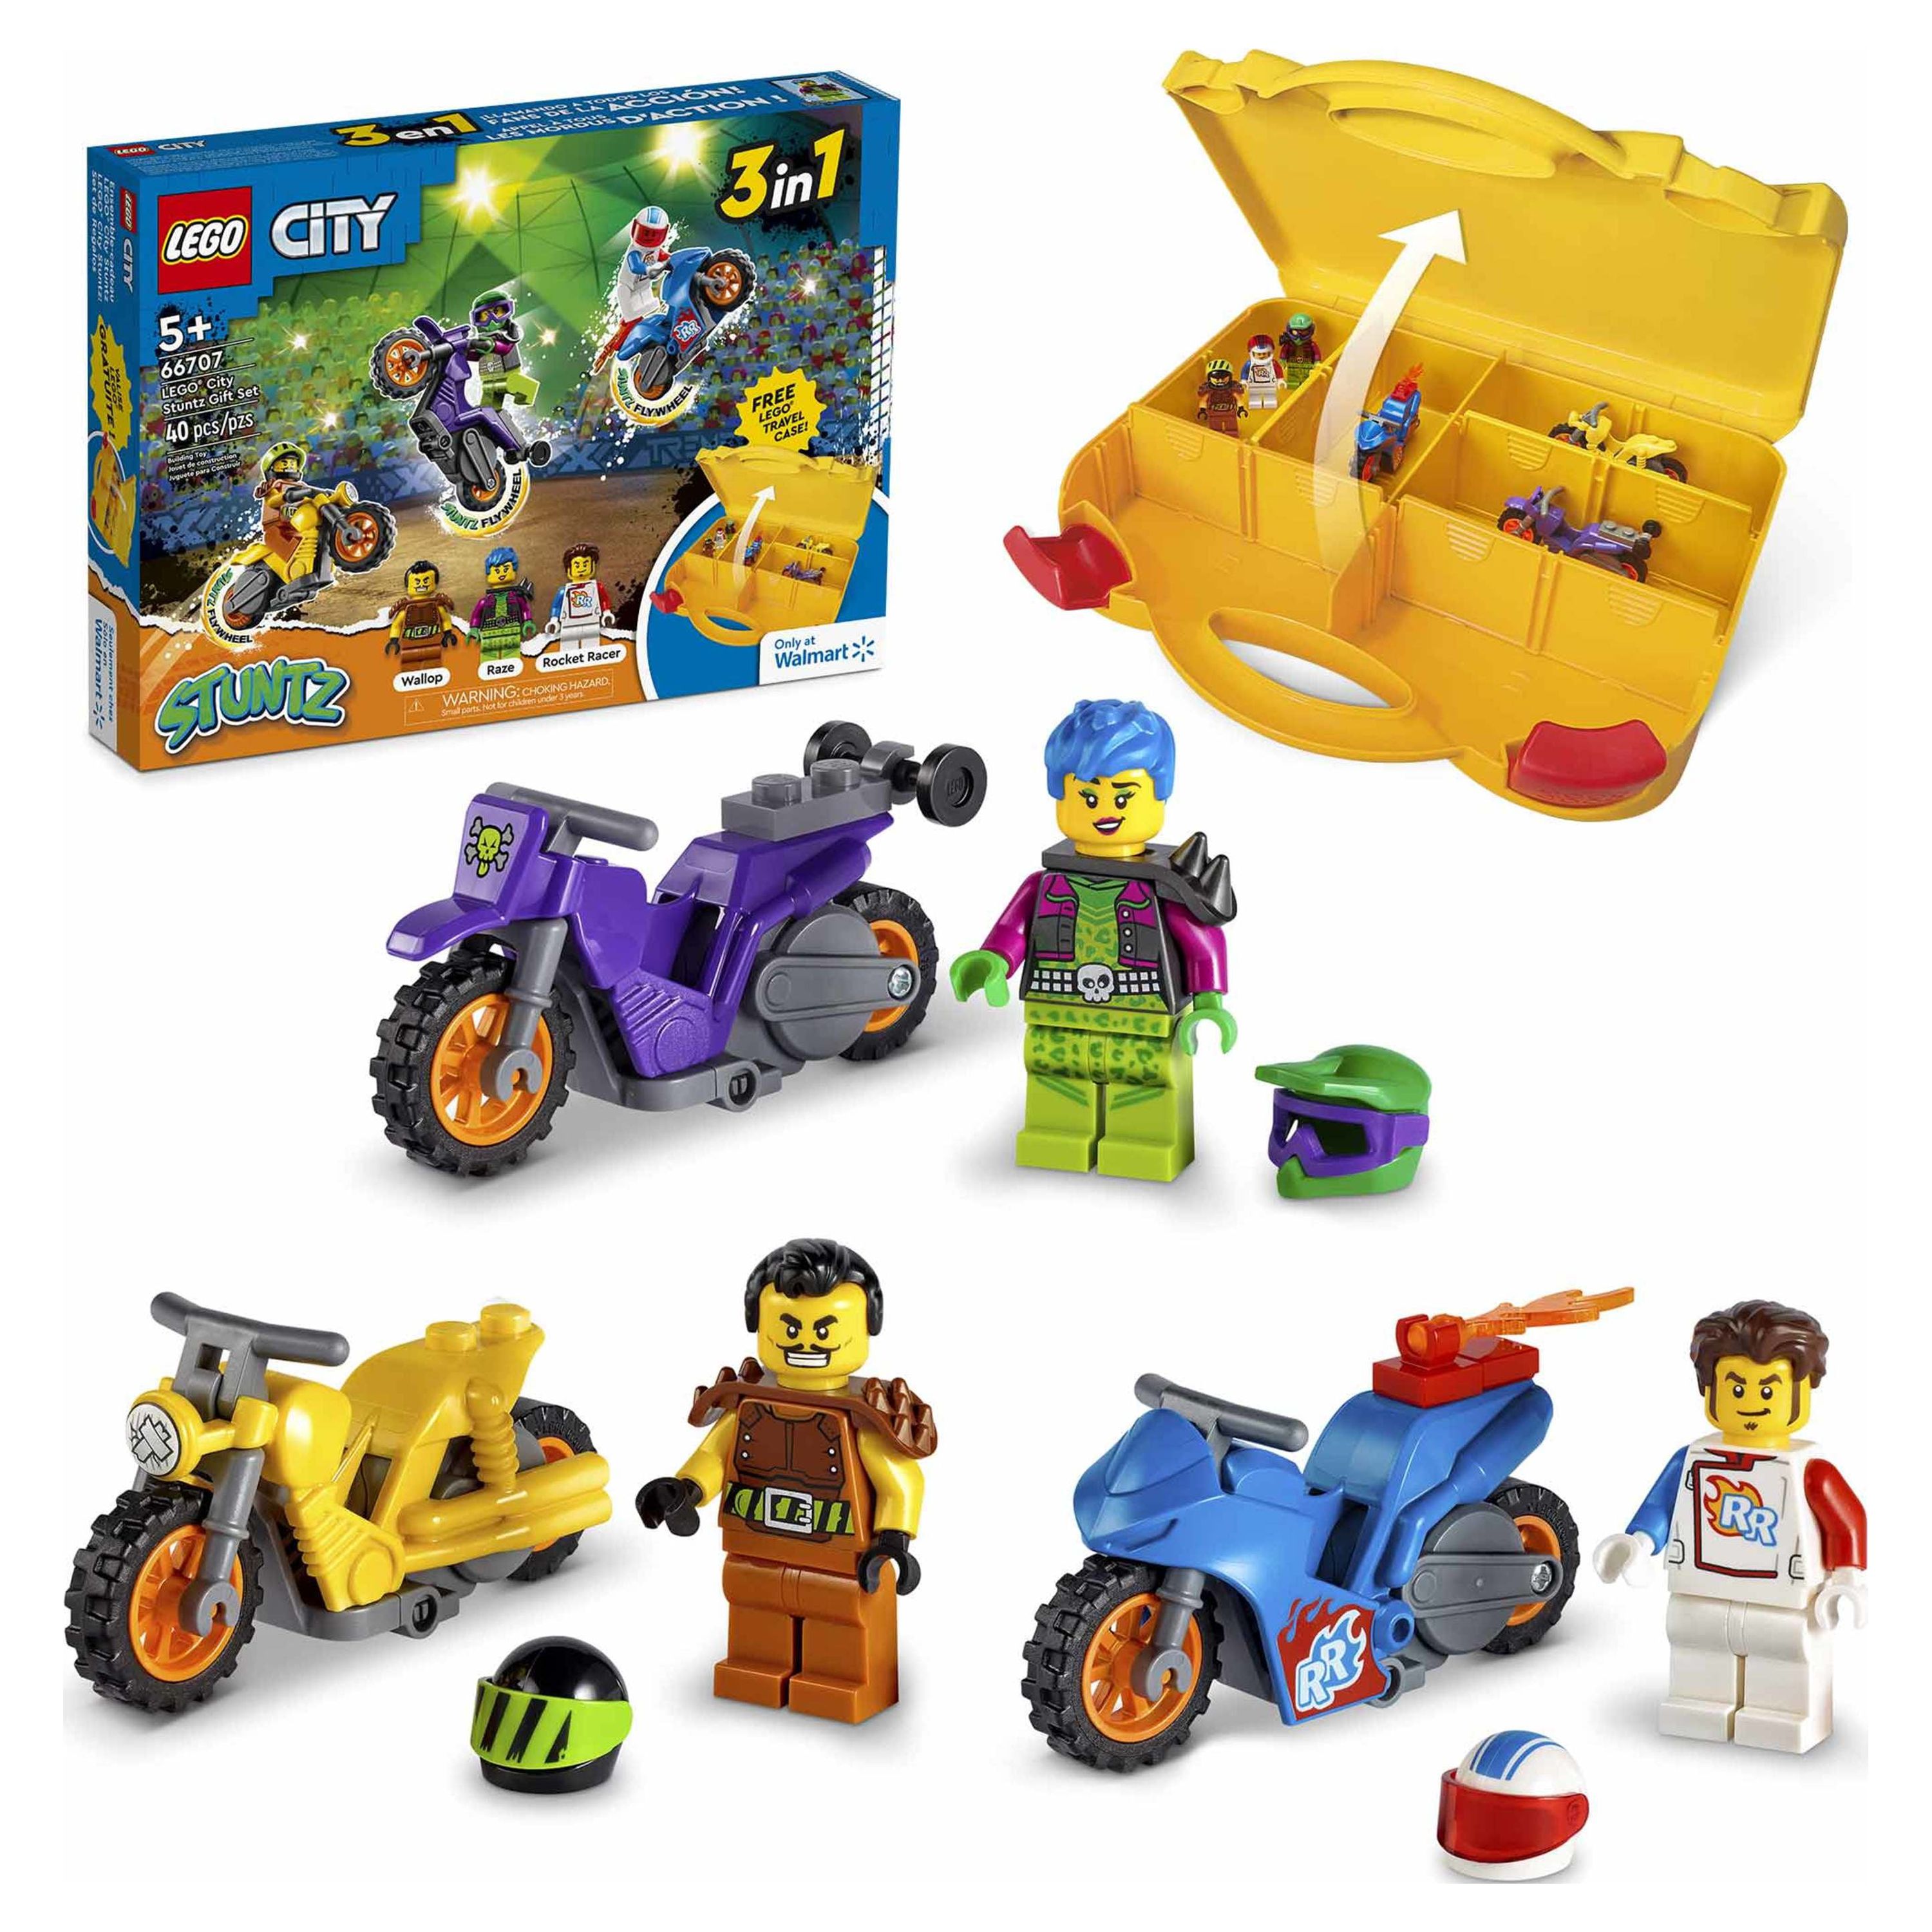 LEGO City Stuntz Value Set 3 Minifigures 3 Bikes and Carrying Case 66707 - image 1 of 16